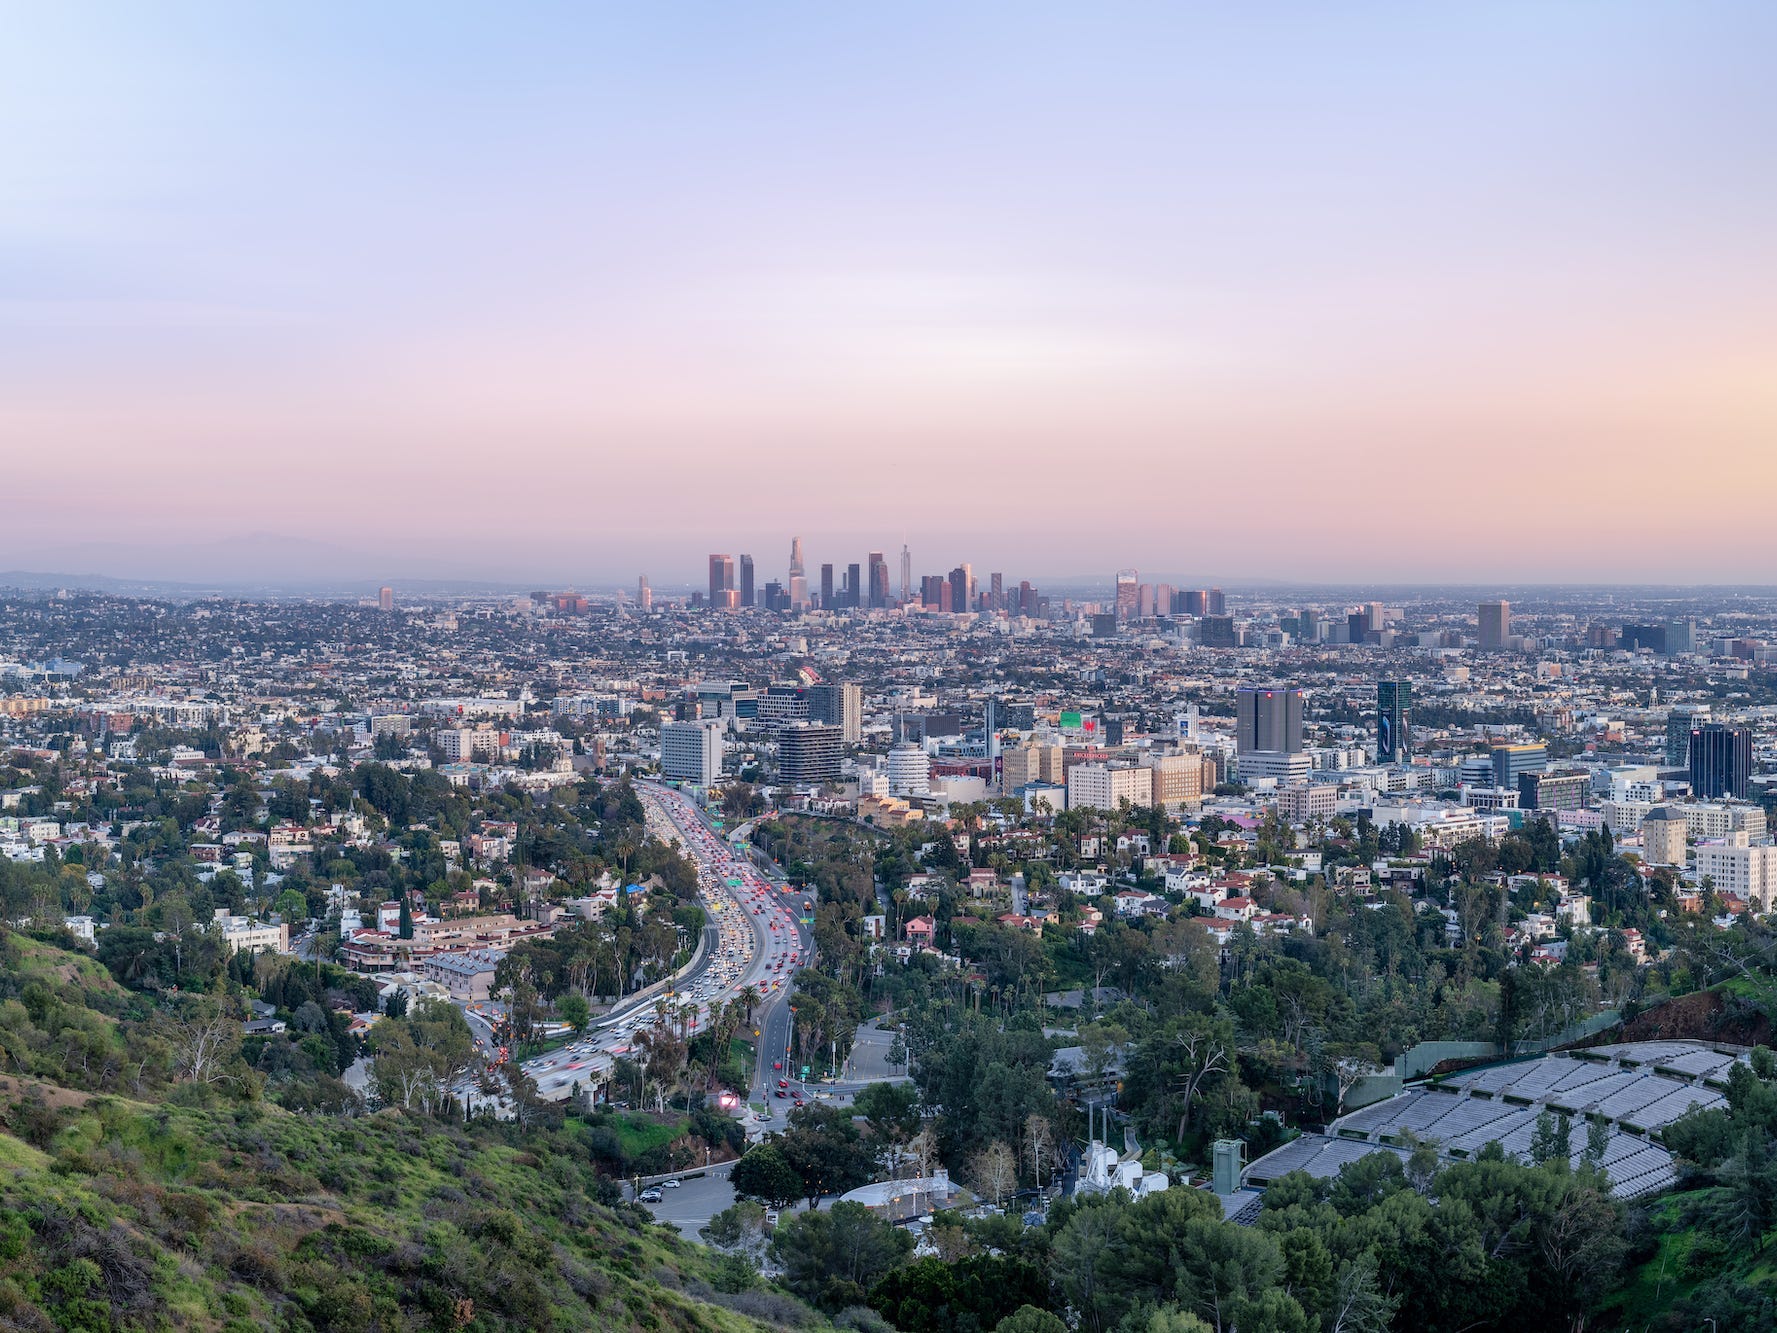 Los Angeles, California